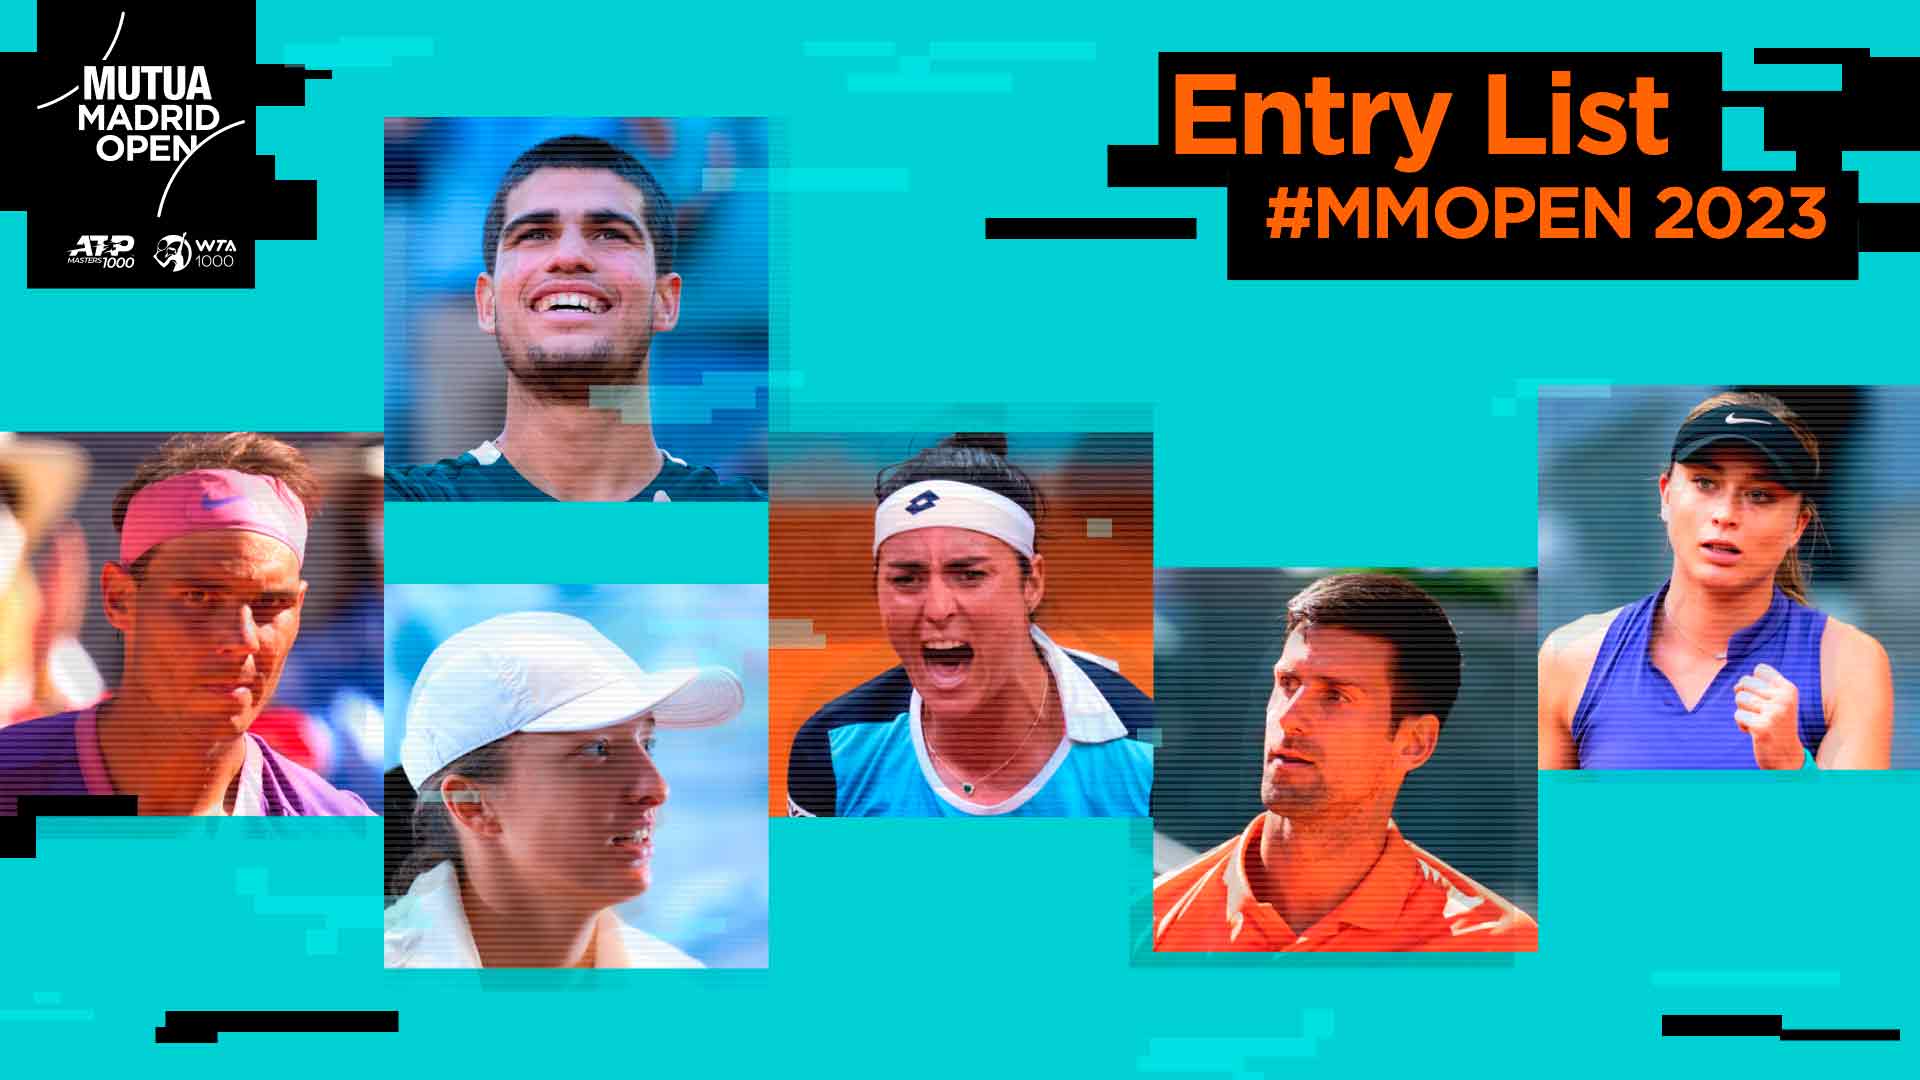 Los mejores jugadores del mundo ATP y WTA están inscritos en el Mutua Madrid Open 2023.